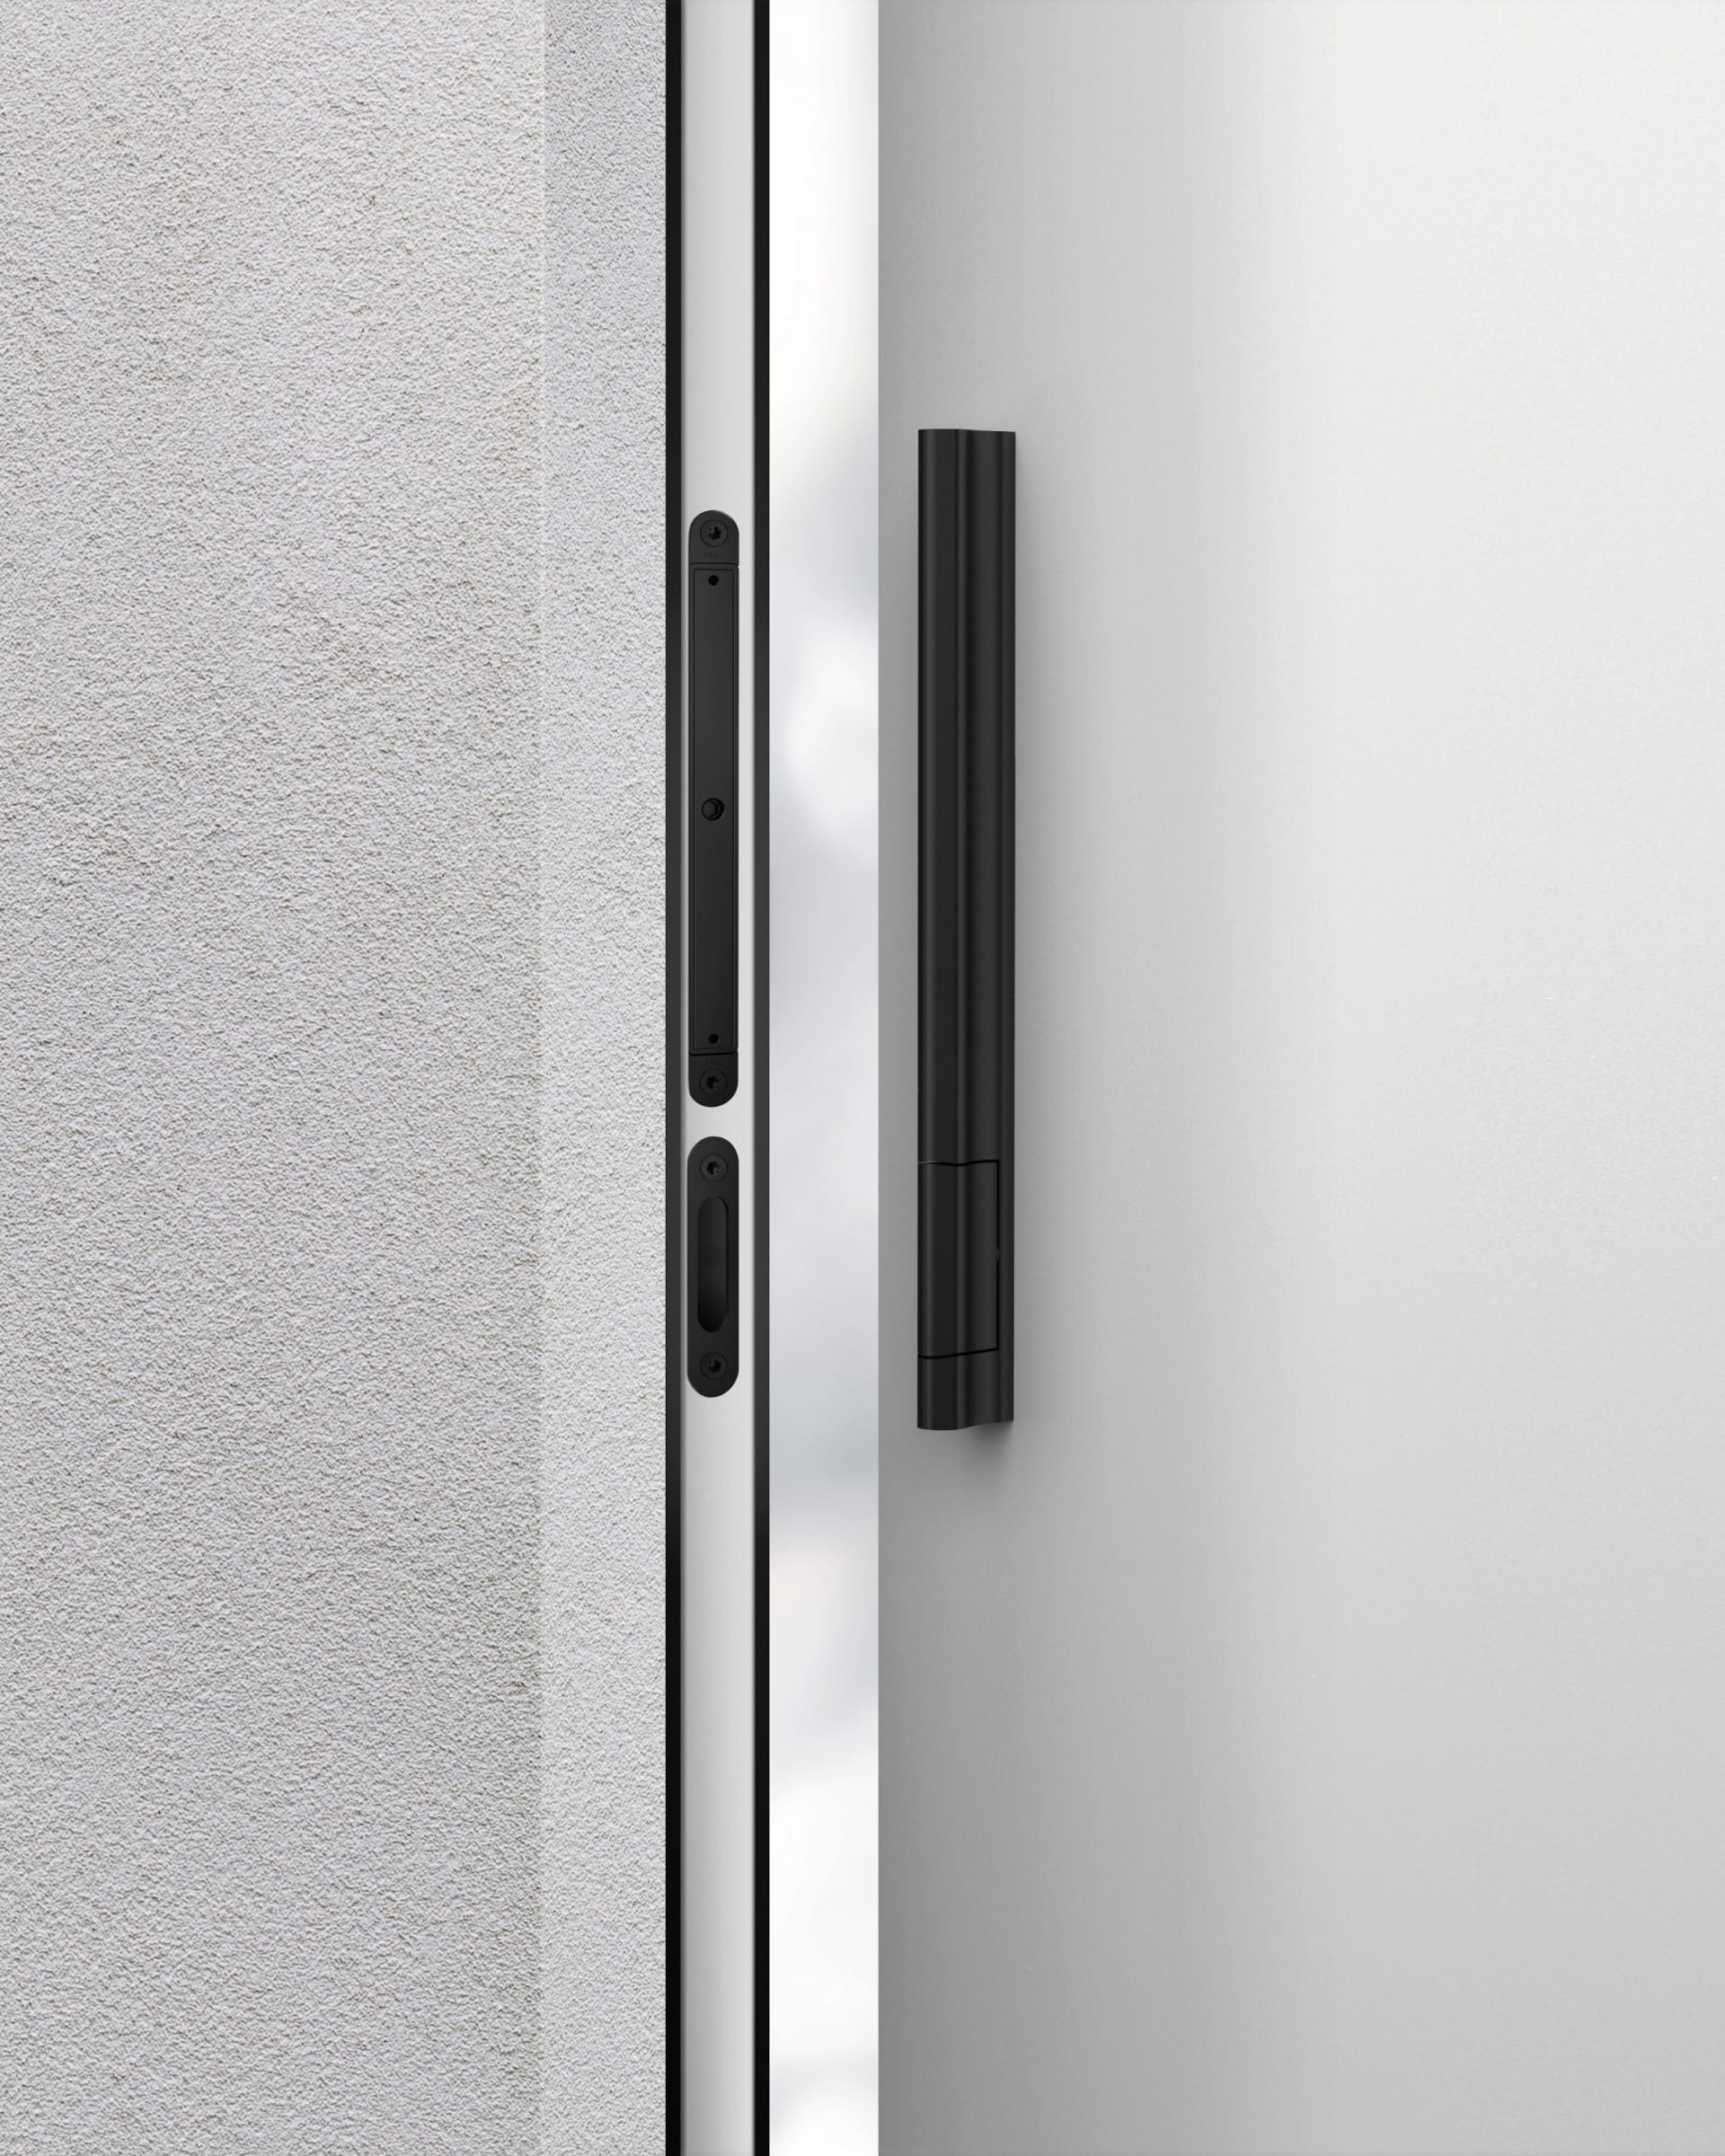 Ovládání dveří bez kliky, zámku i jakékoli elektroniky umožňuje důvtipné řešení systému M&T magnetic, který funguje na principu velmi silných magnetů zabudovaných ve dveřní zárubni a jejich protikusem ve dveřním křídle.